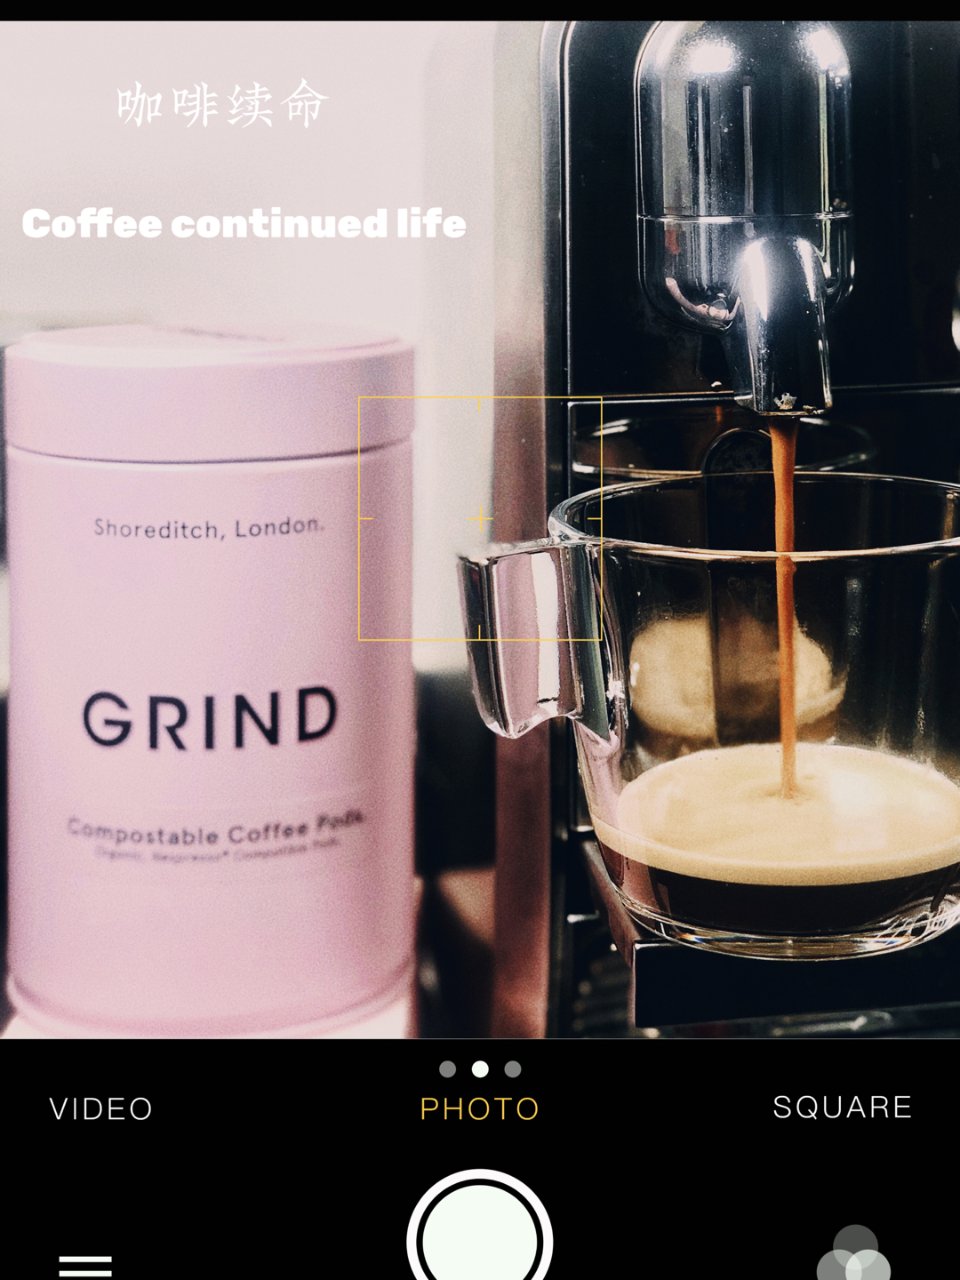 Grind coffee